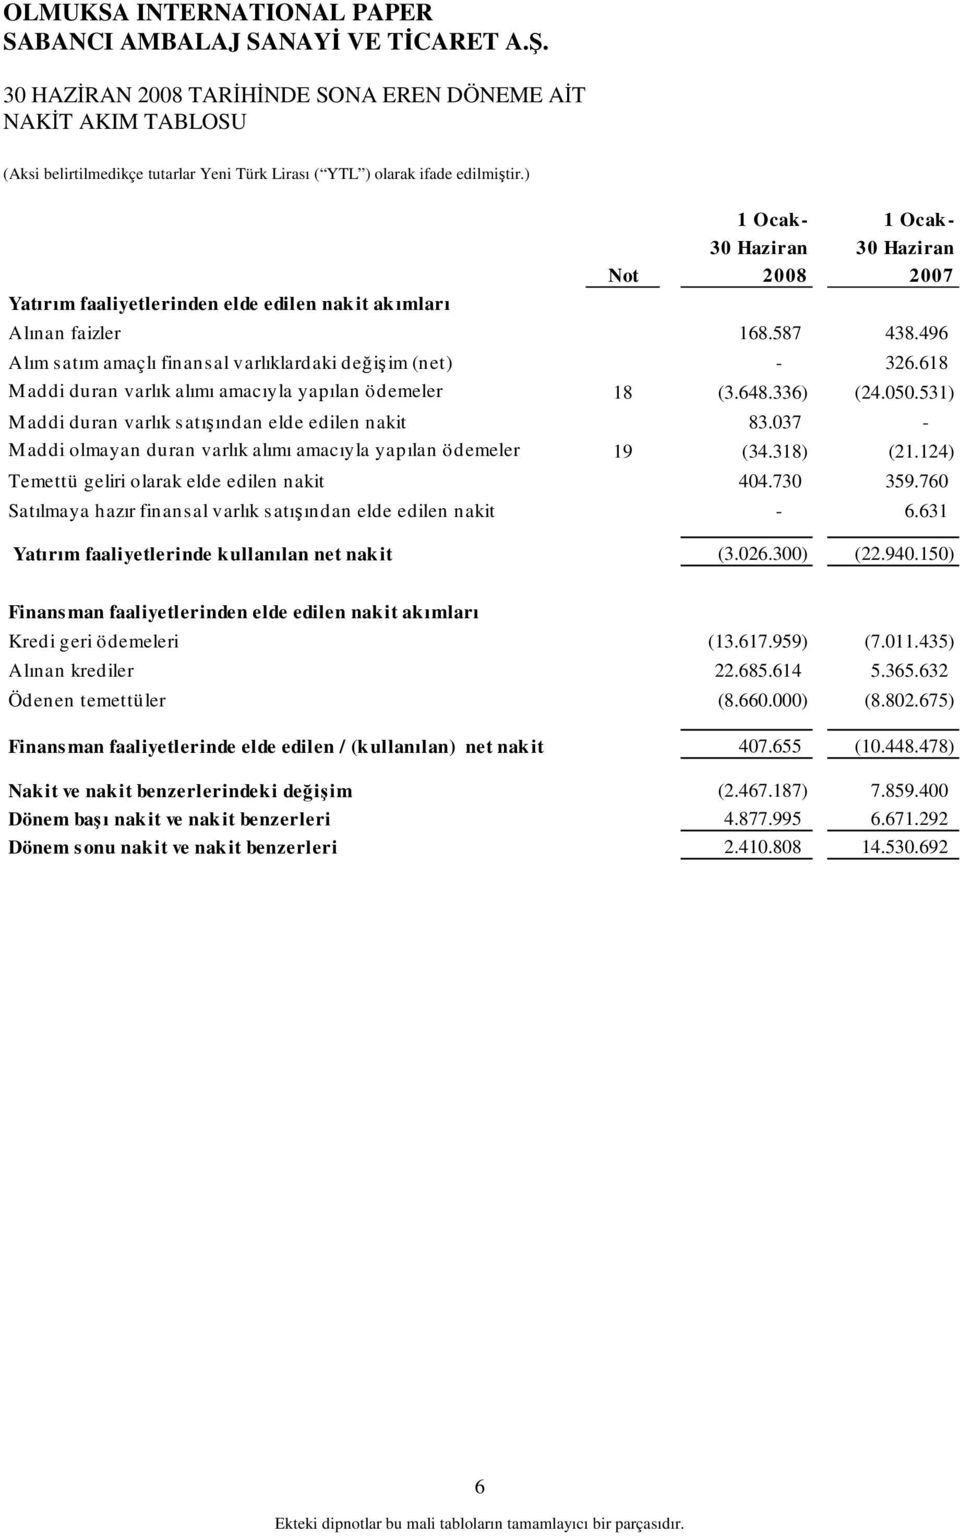 037 - M addi olmayan duran varlık alımı amacıyla yapılan ödemeler 19 (34.318) (21.124) Temettü geliri olarak elde edilen nakit 404.730 359.